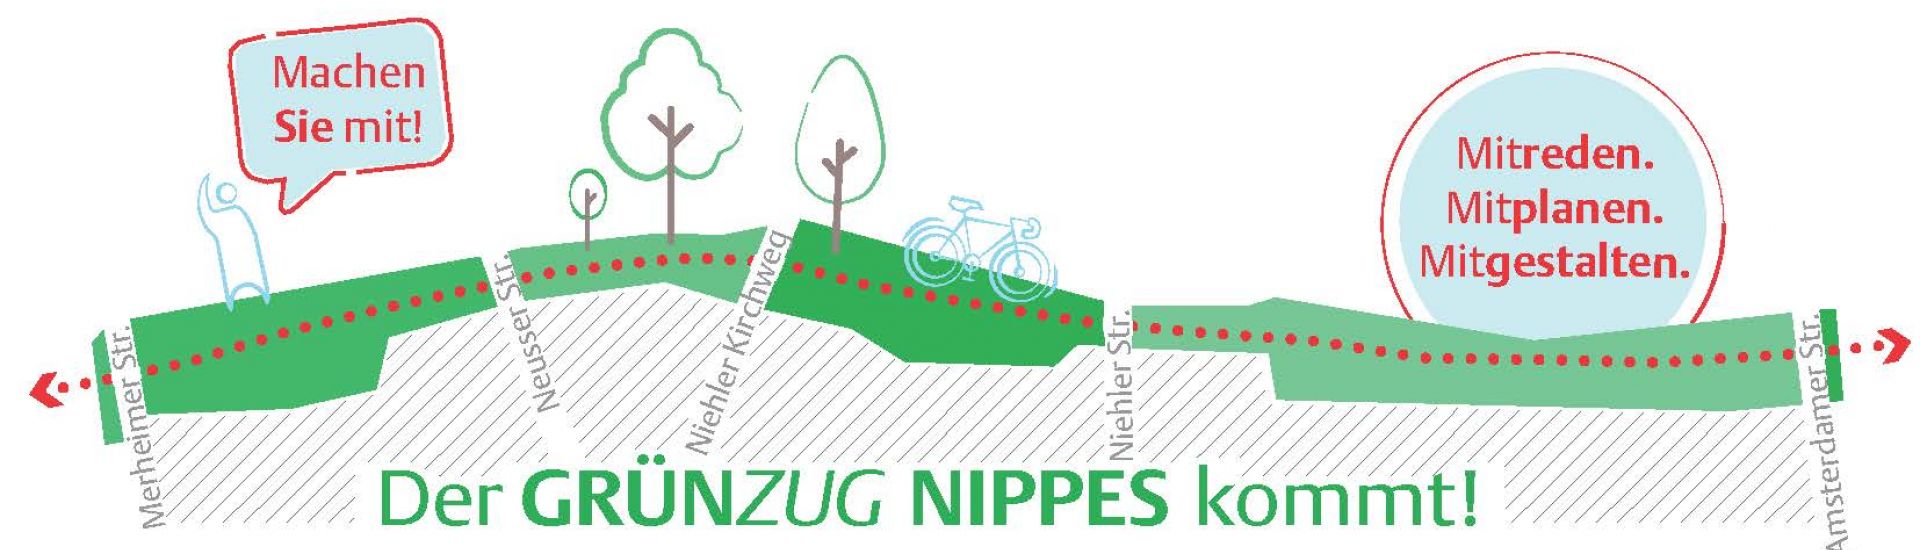 Dargestellt ist das Logo des GrünZugs Nippes mit einem Schriftzug sowie Bäumen und einem Radweg